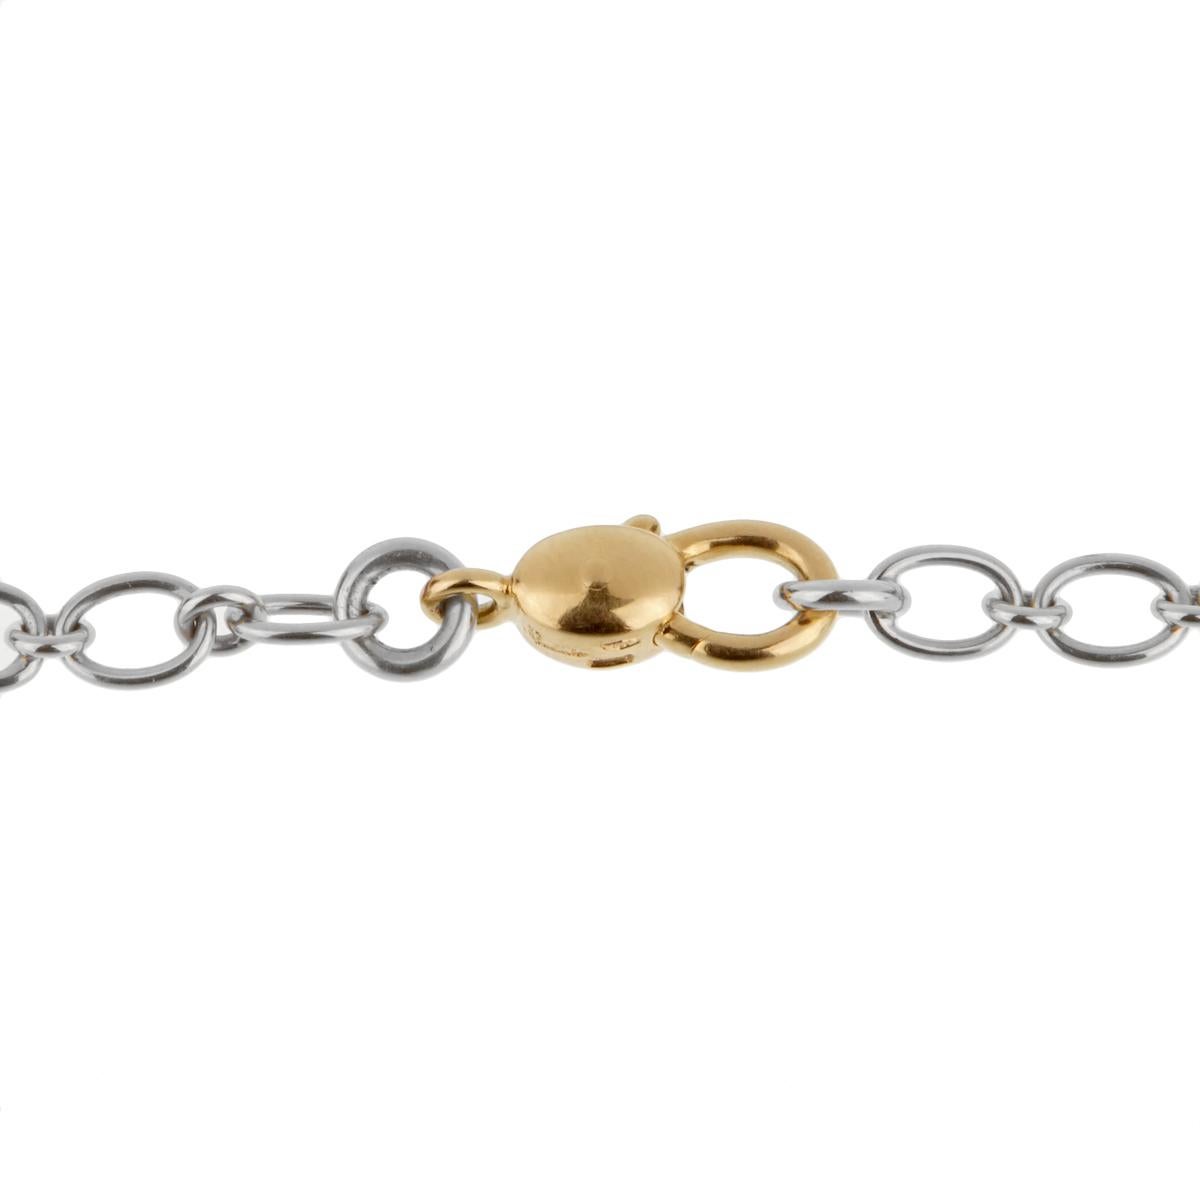 Women's or Men's Pomellato White Gold Chain Link Necklace